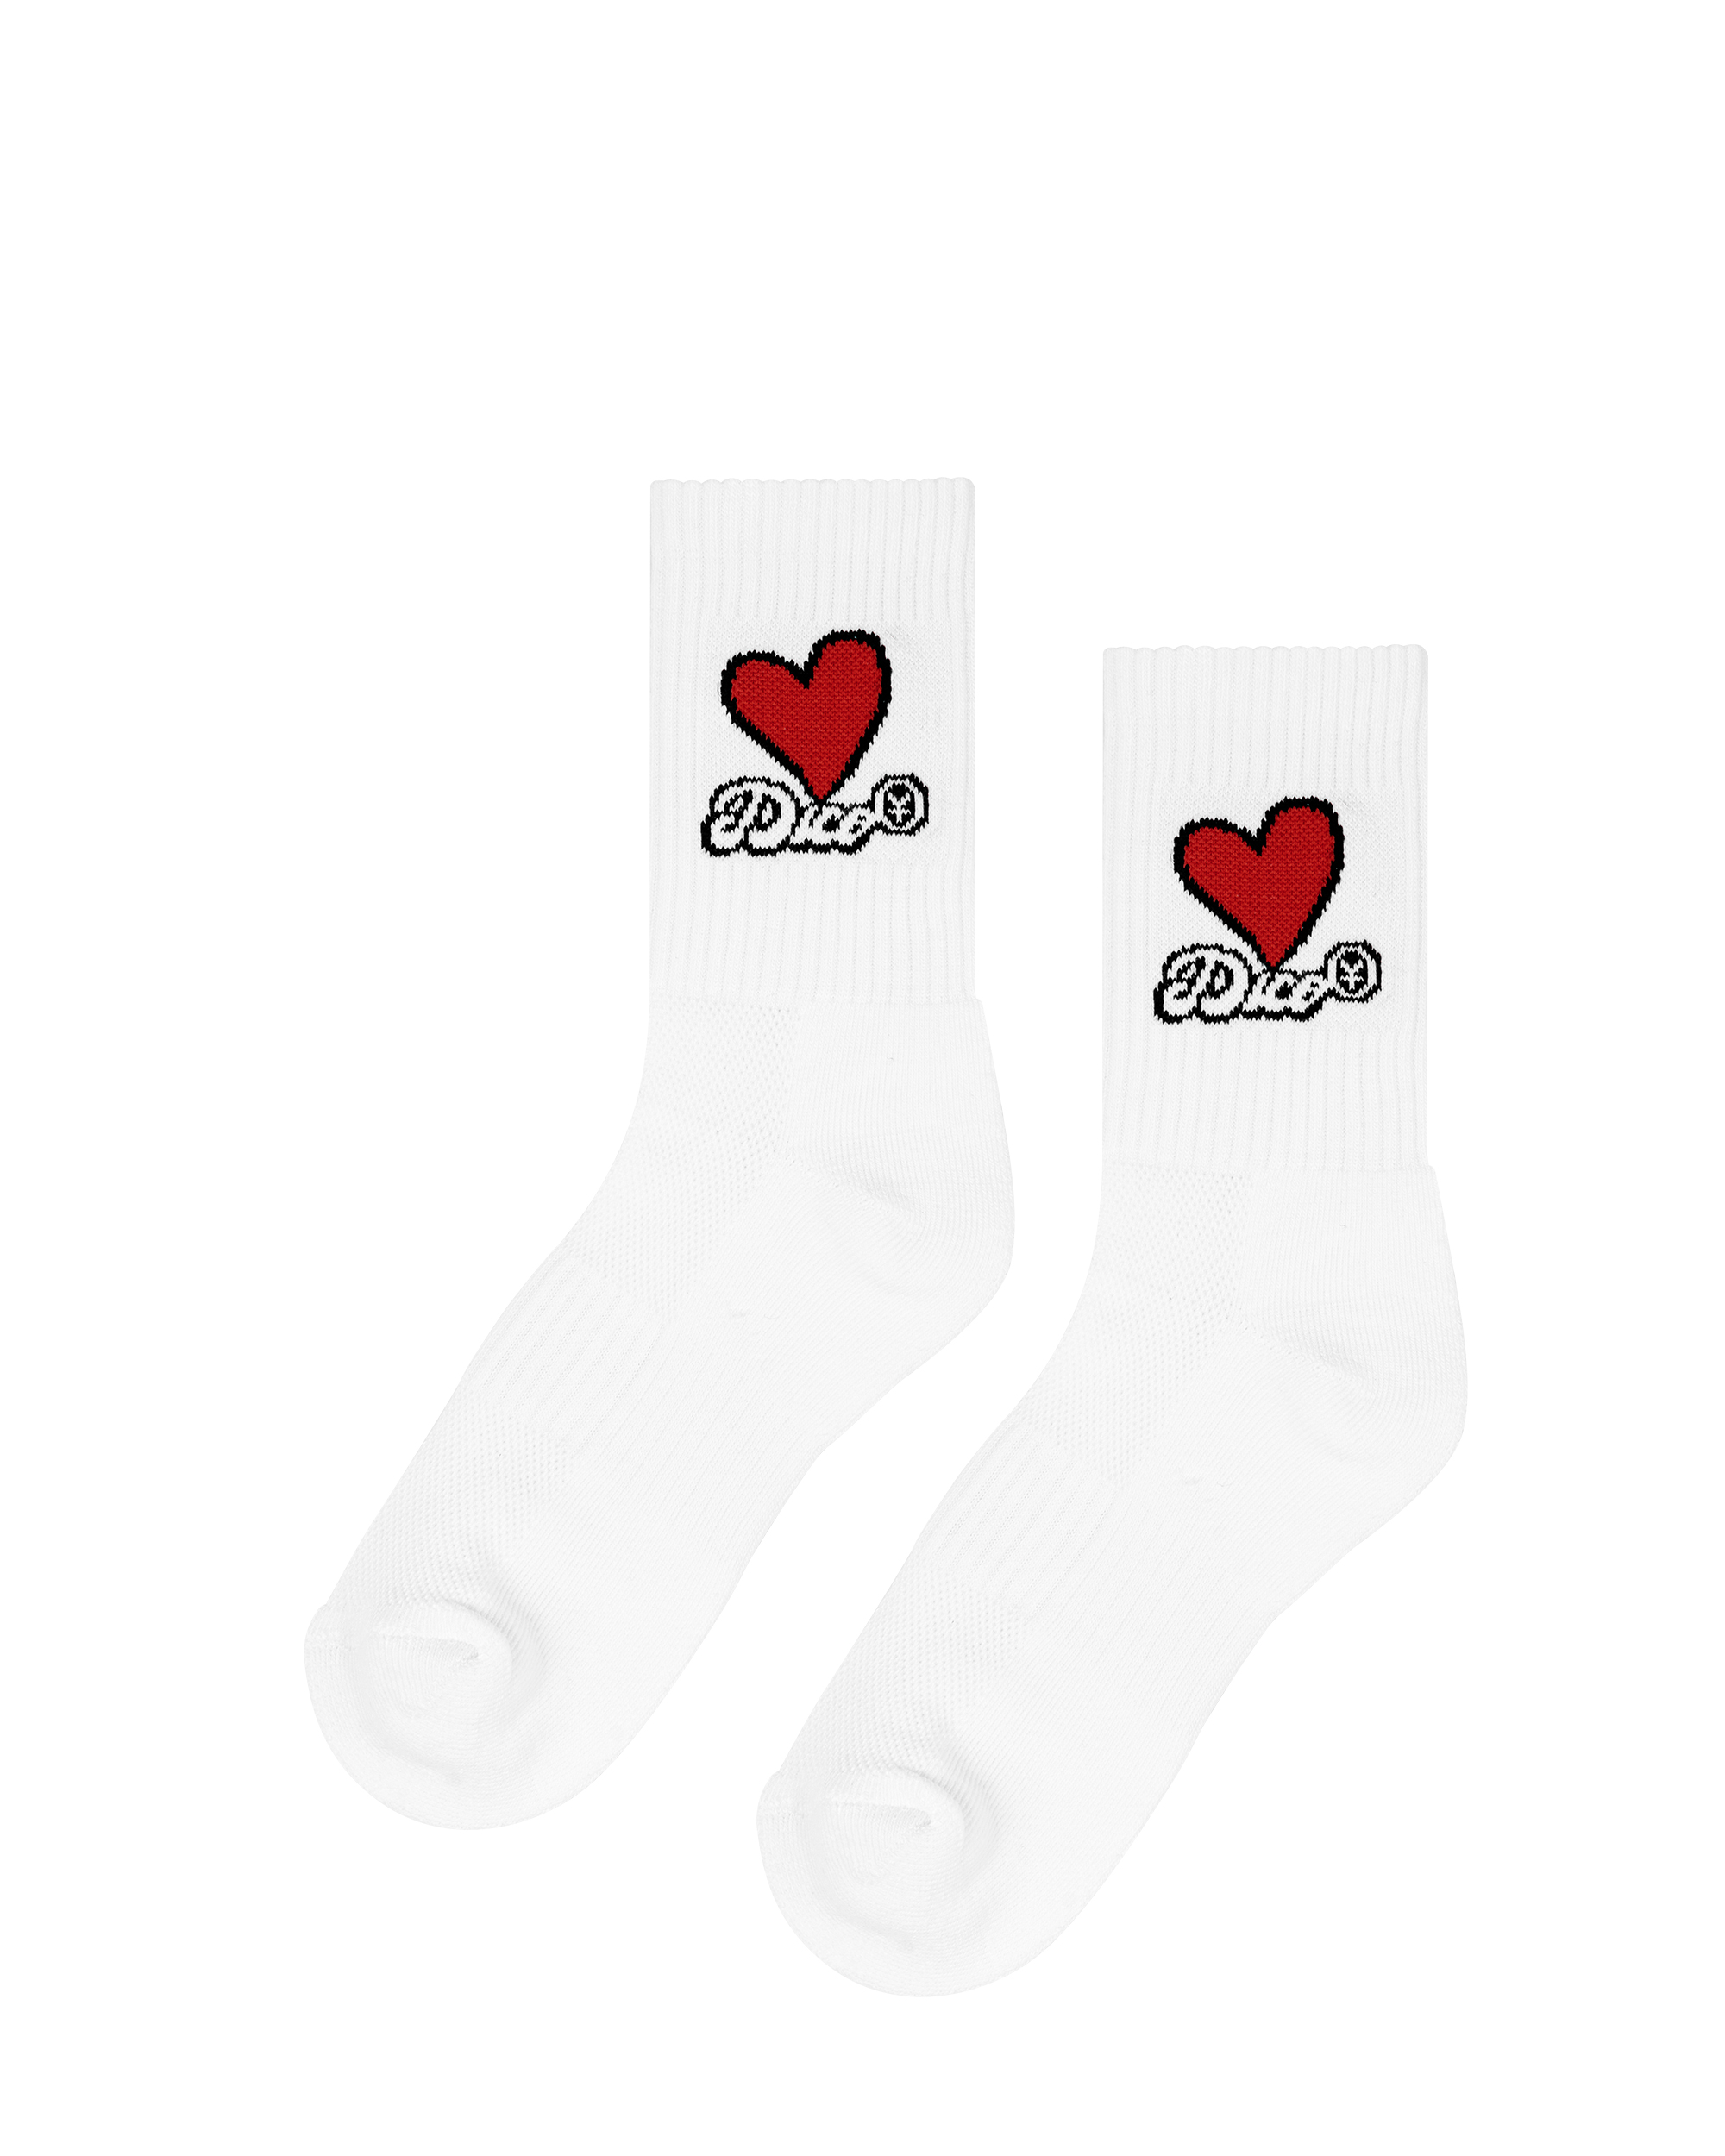 Dico Love Socks - Red/White - Pack of 3